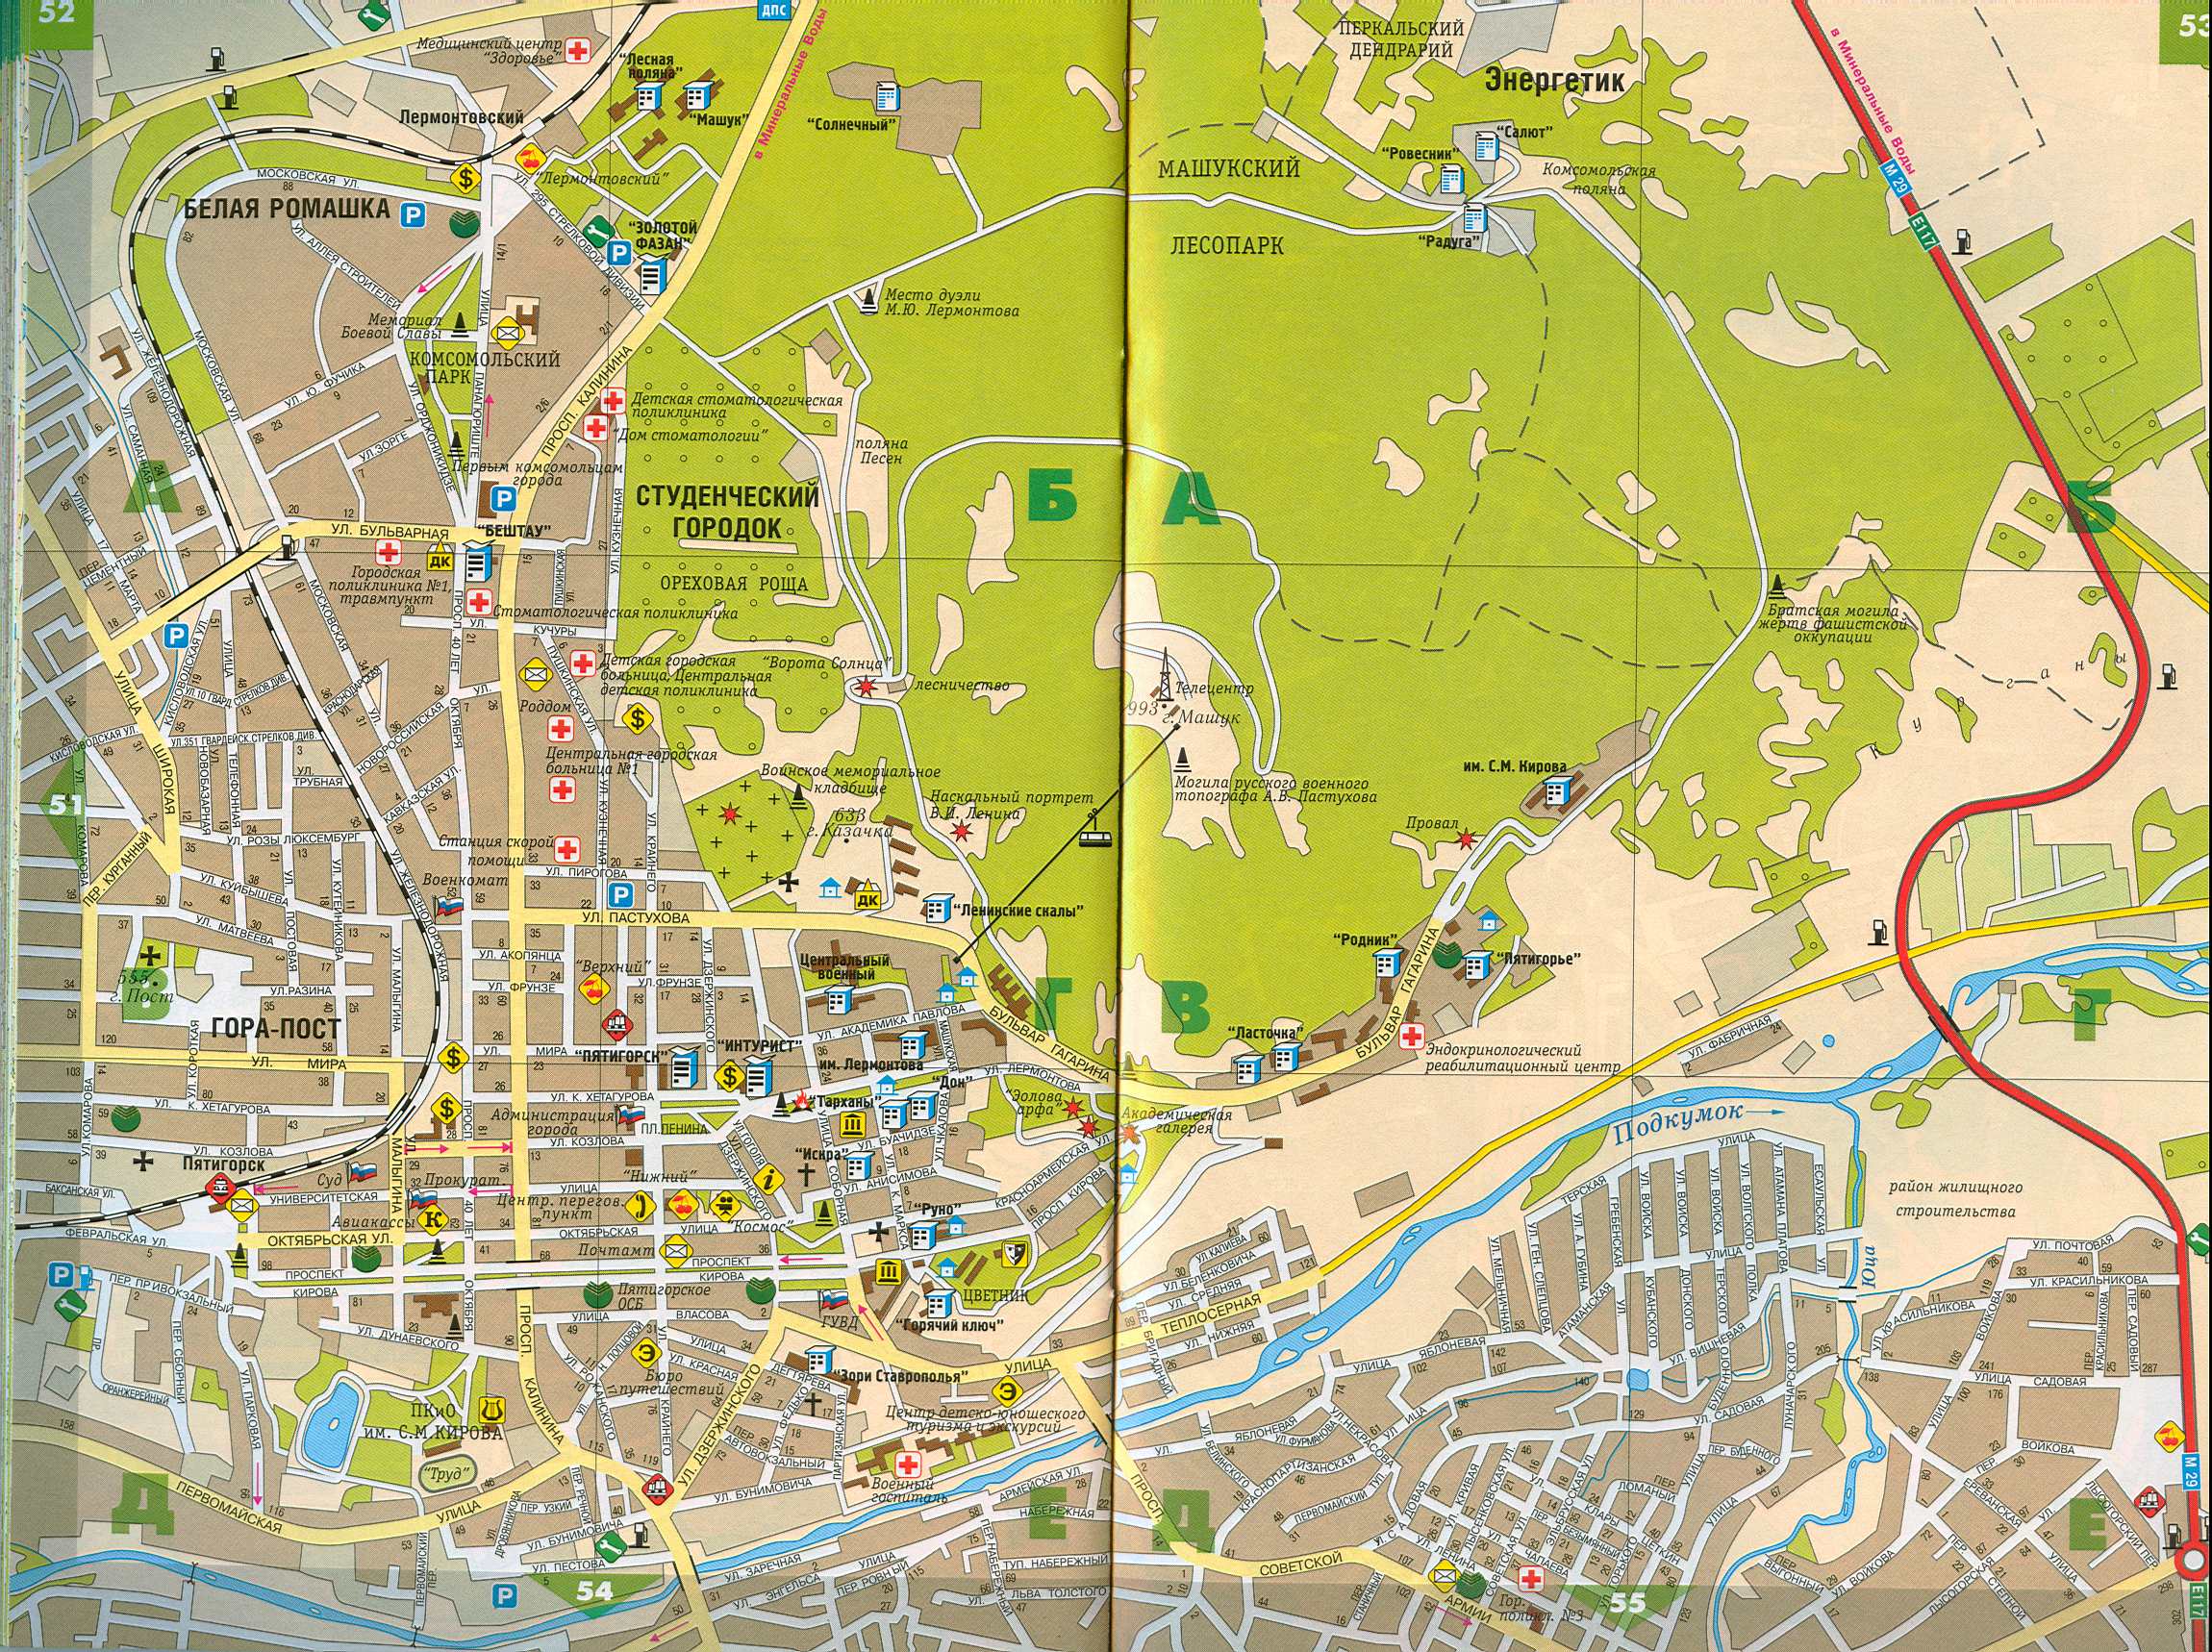 Карта города Пятигорск. Карта города Пятигорска с номерами домов,Ставропольского края